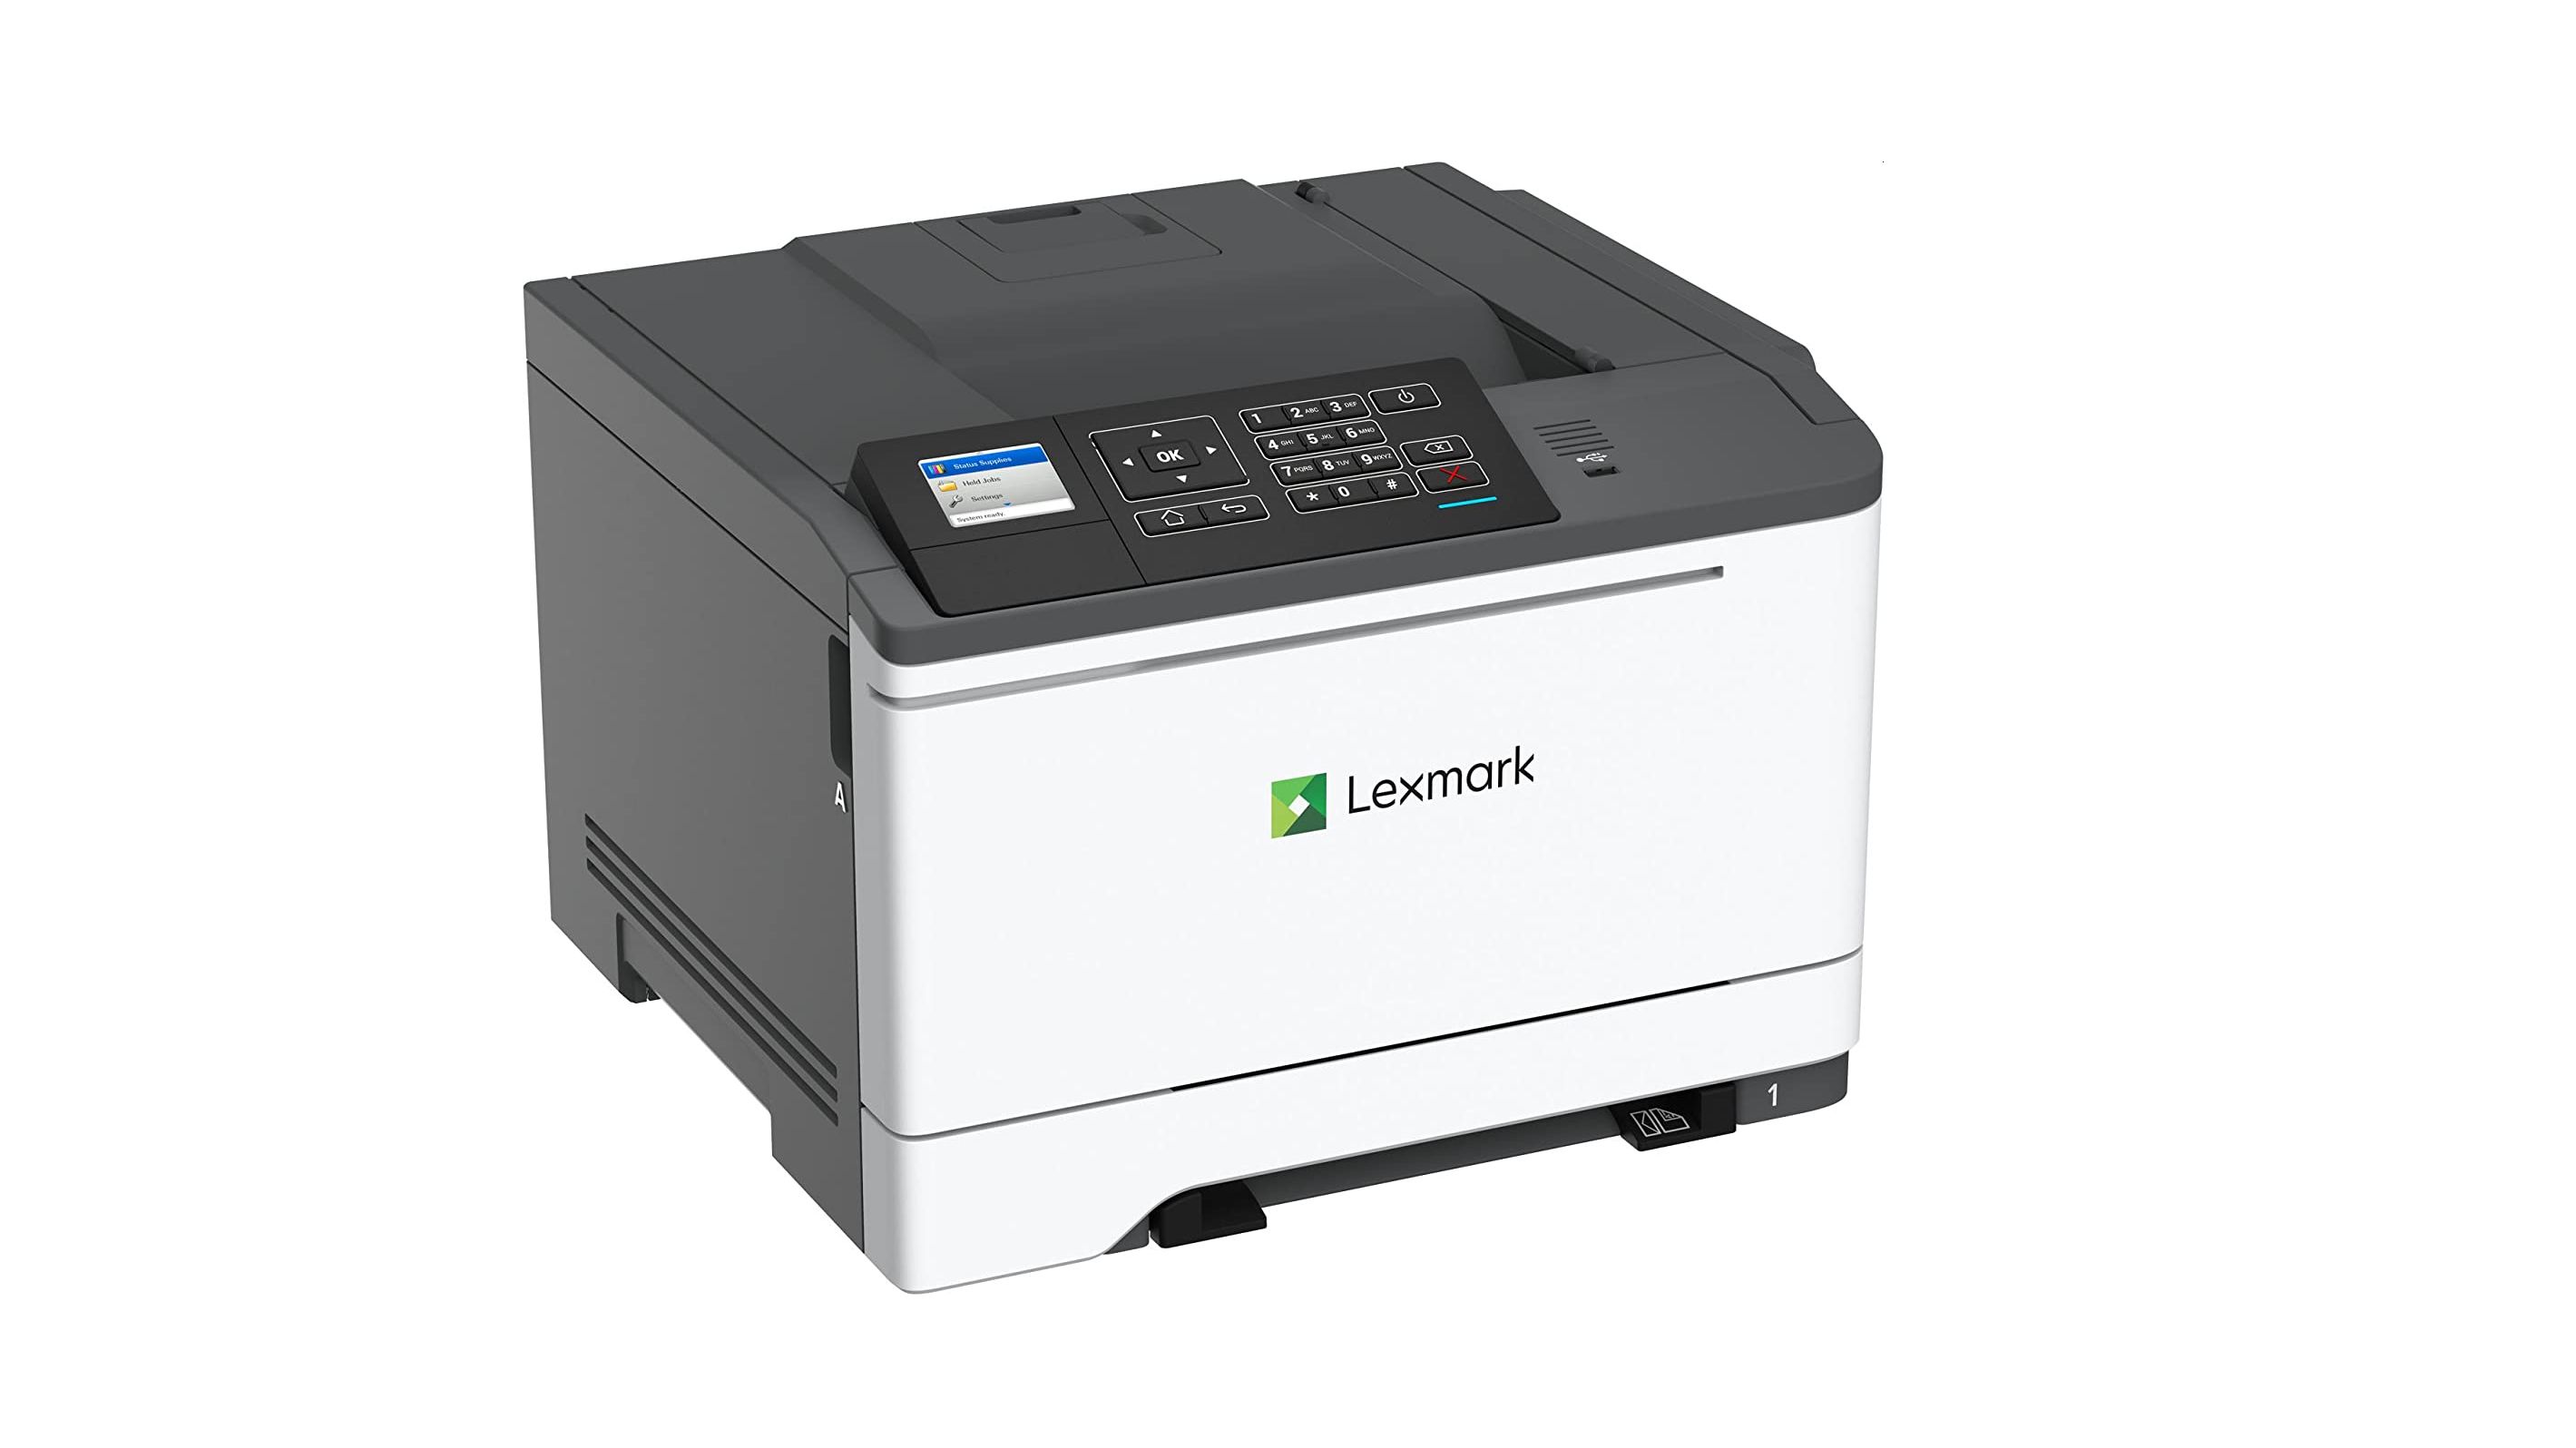 uudgrundelig konkurrenter Gå forud Here's the cheapest color laser printer in stock right now | TechRadar